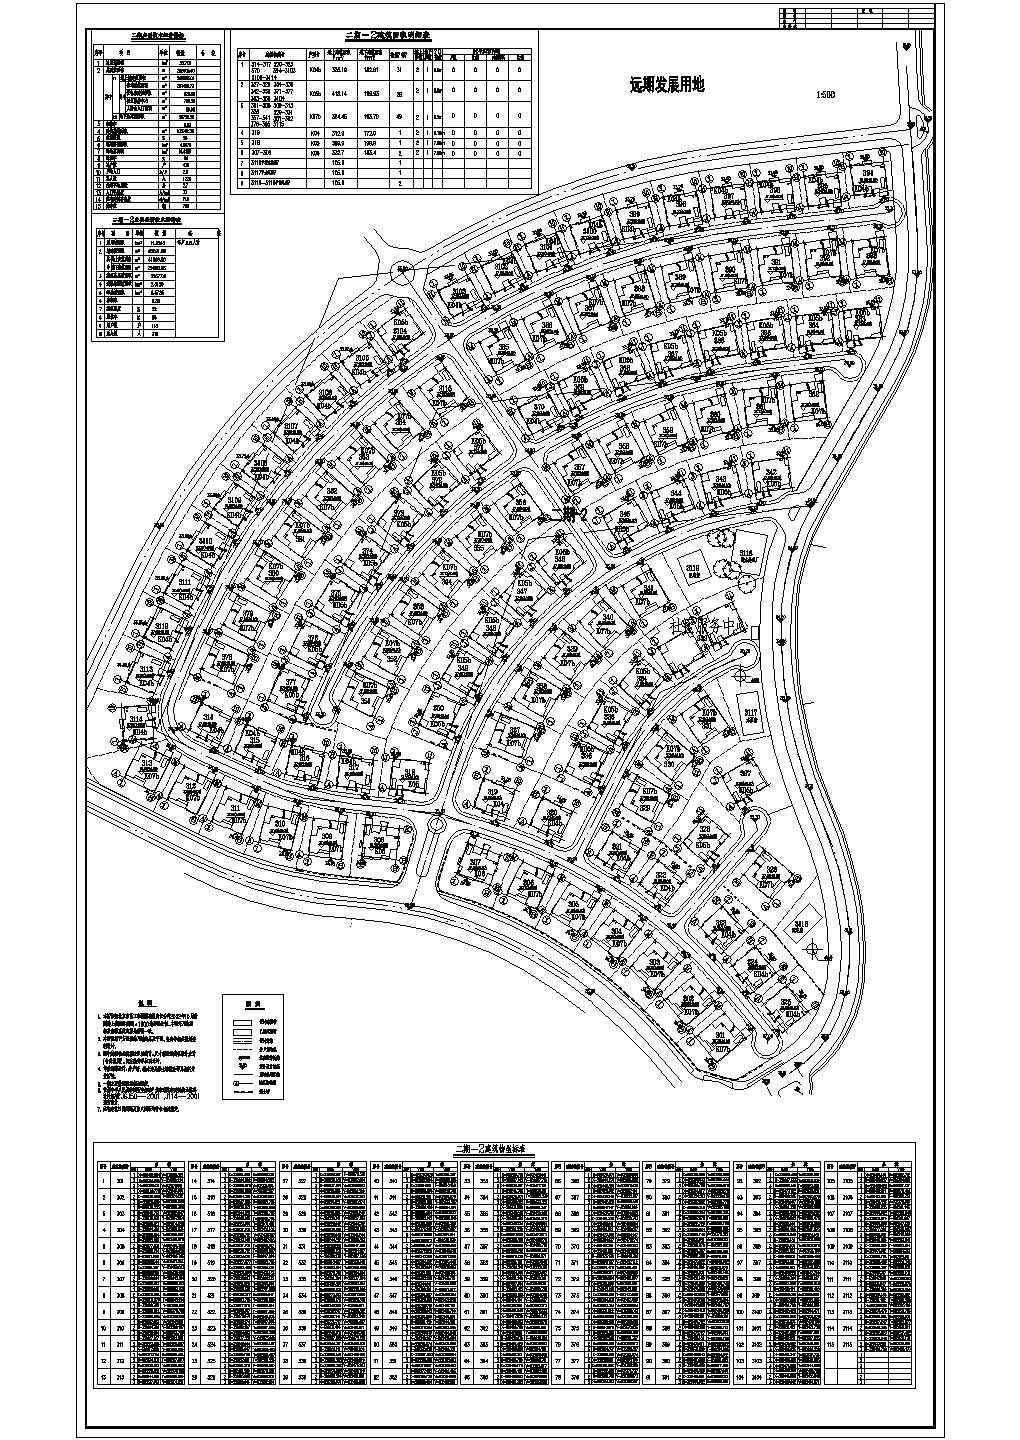 北京某地别墅小区规划设计总平面图